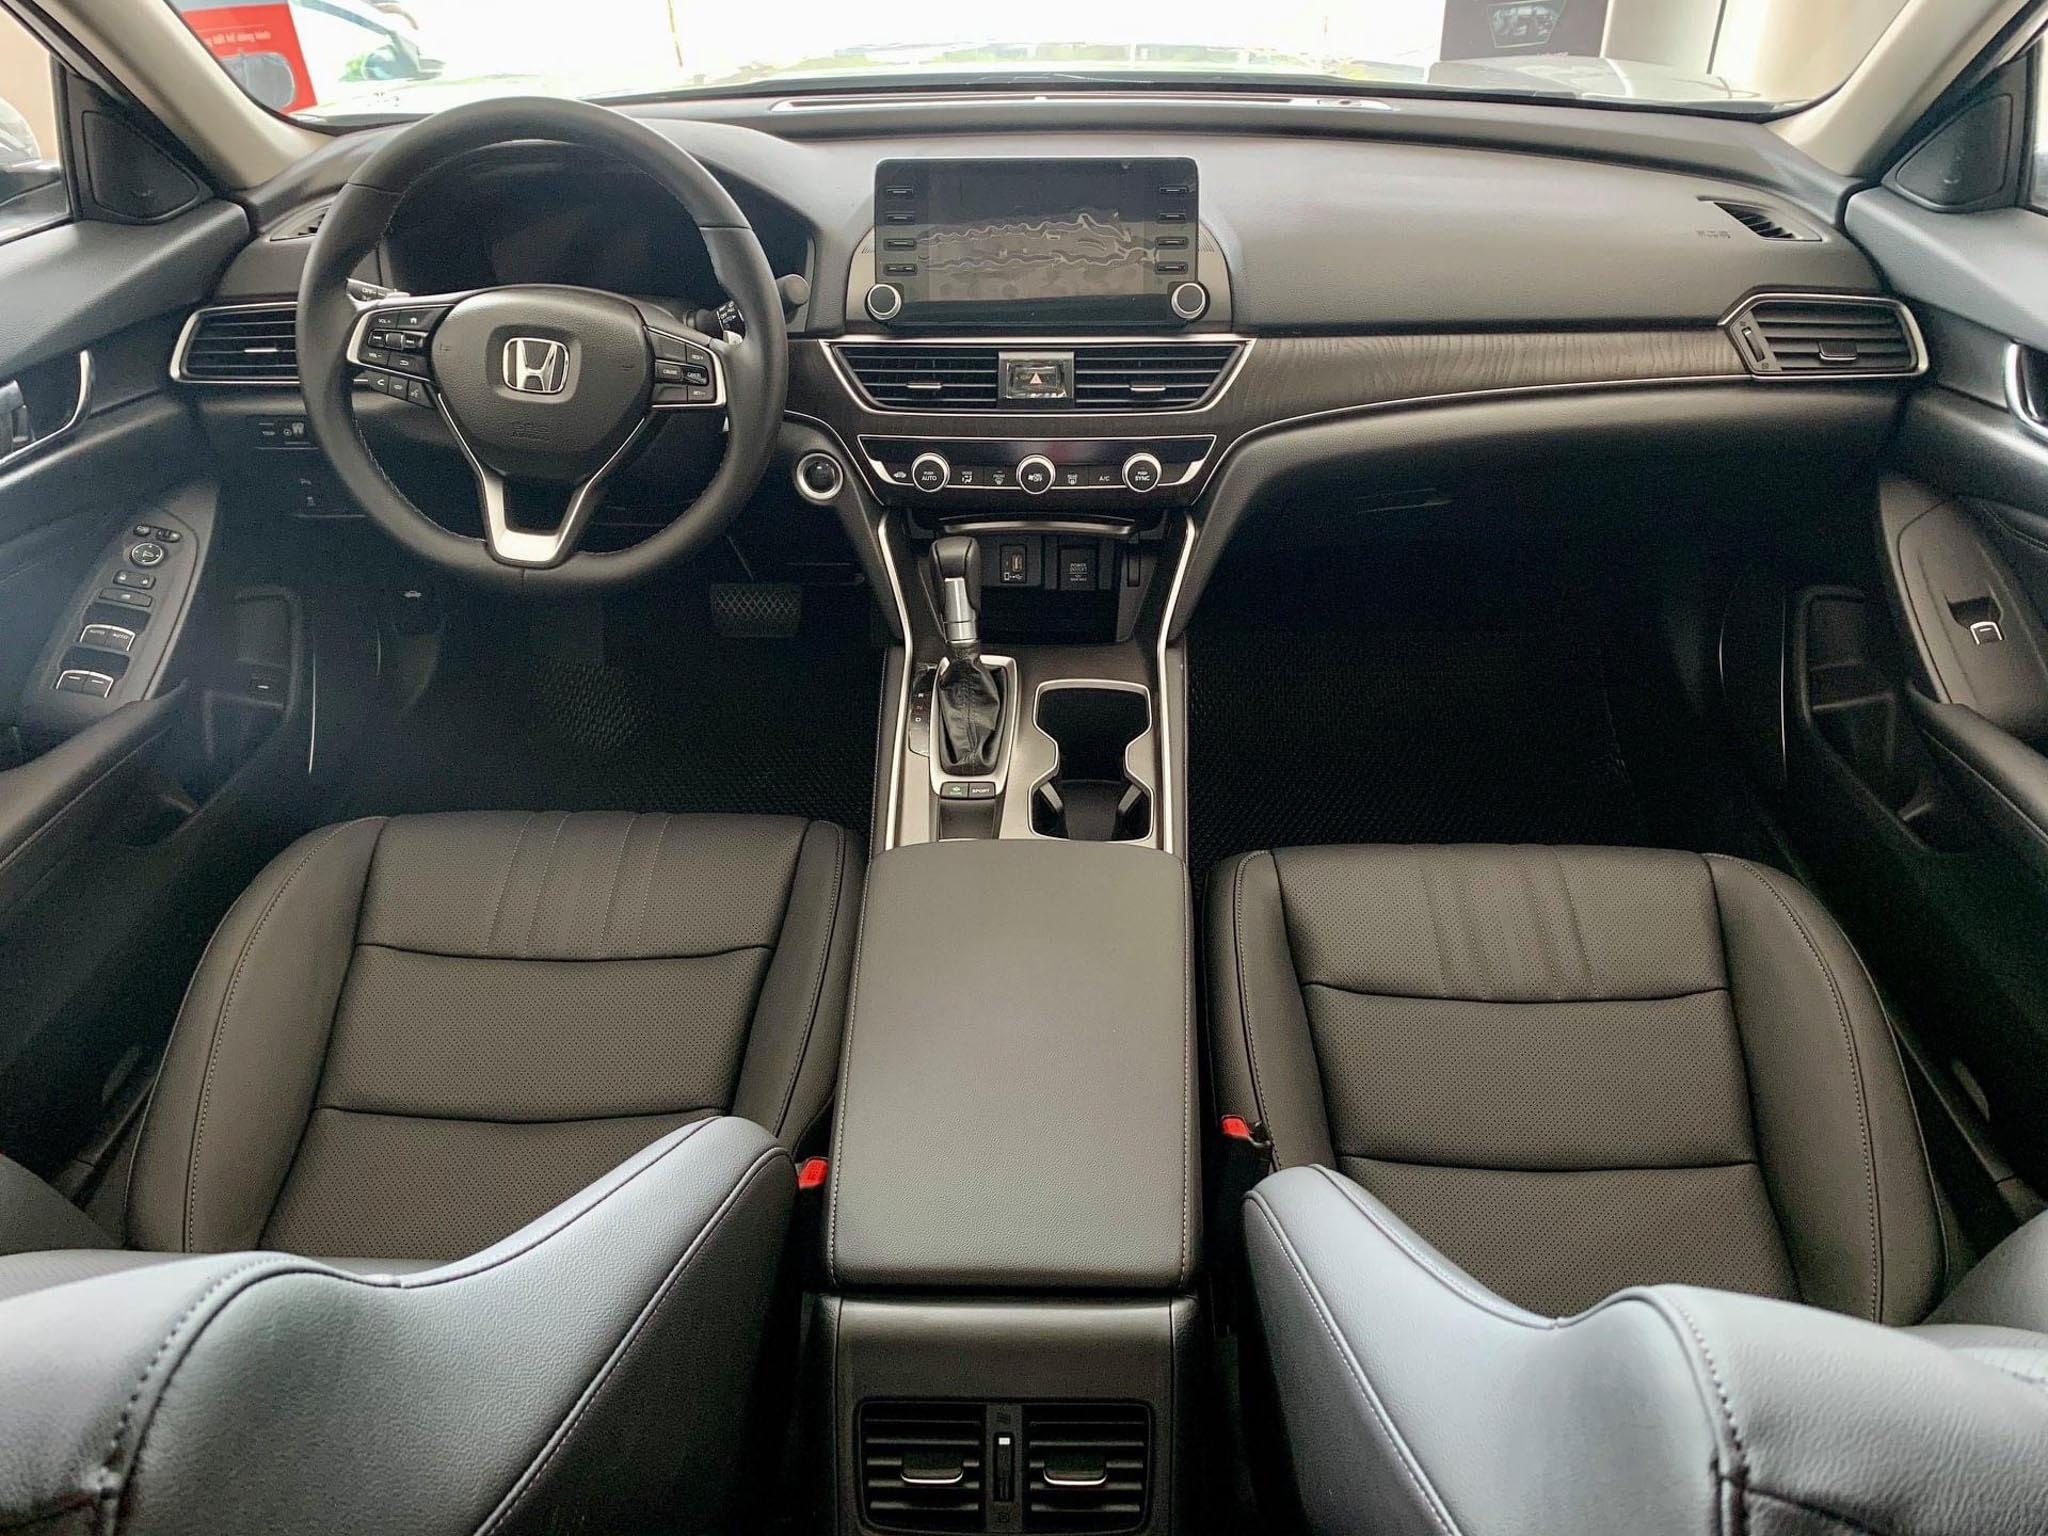 Honda Accord 2019 bán ra tại Thái Lan giá 1 tỷ VNĐ